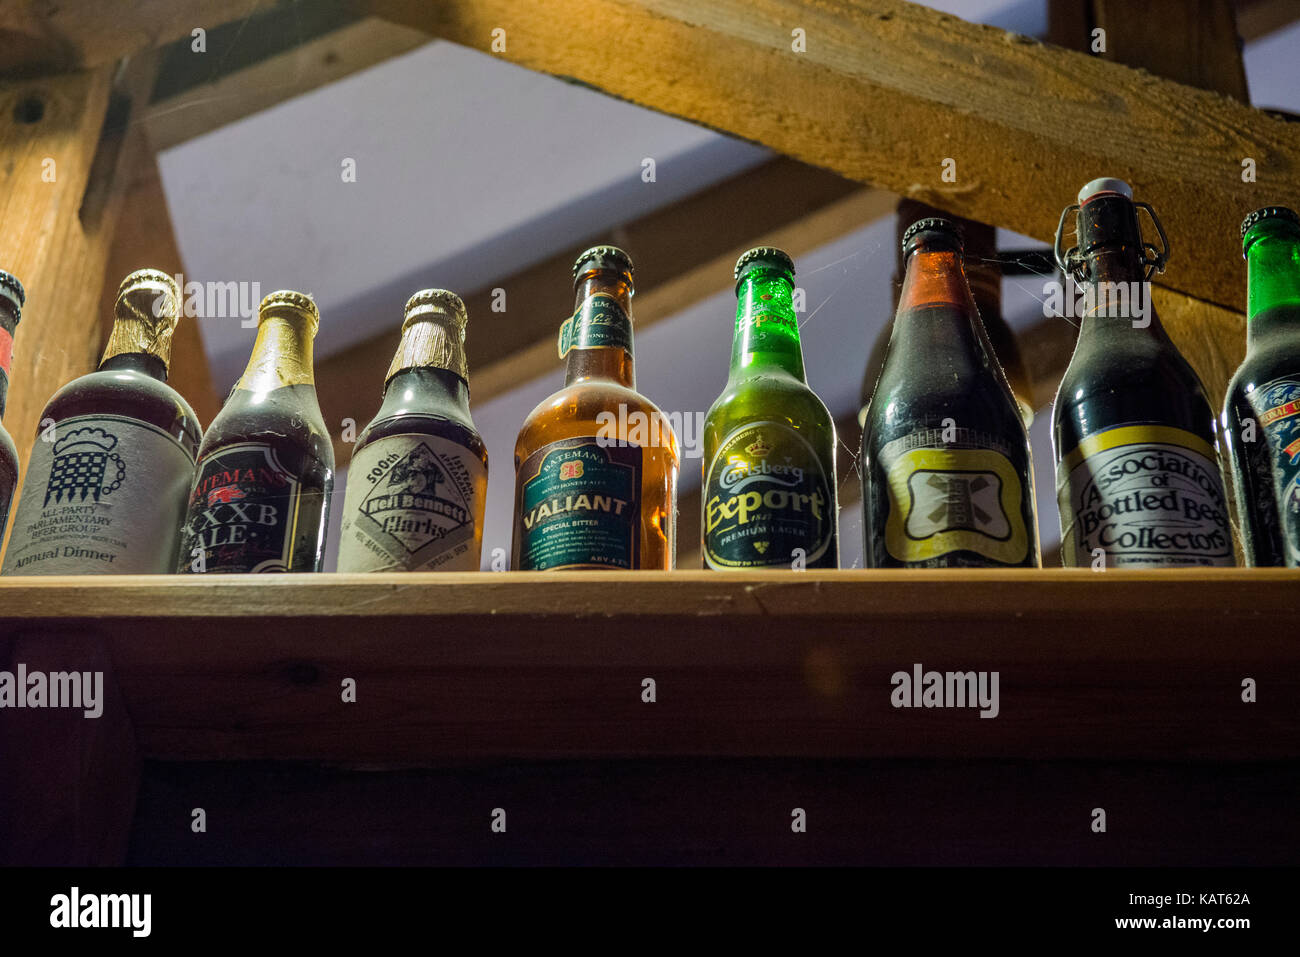 Batemans Brewery a acquis une très bonne réputation pour les bières artisanales primé. Les images ont été prises avec la permission d'une visite guidée. Banque D'Images